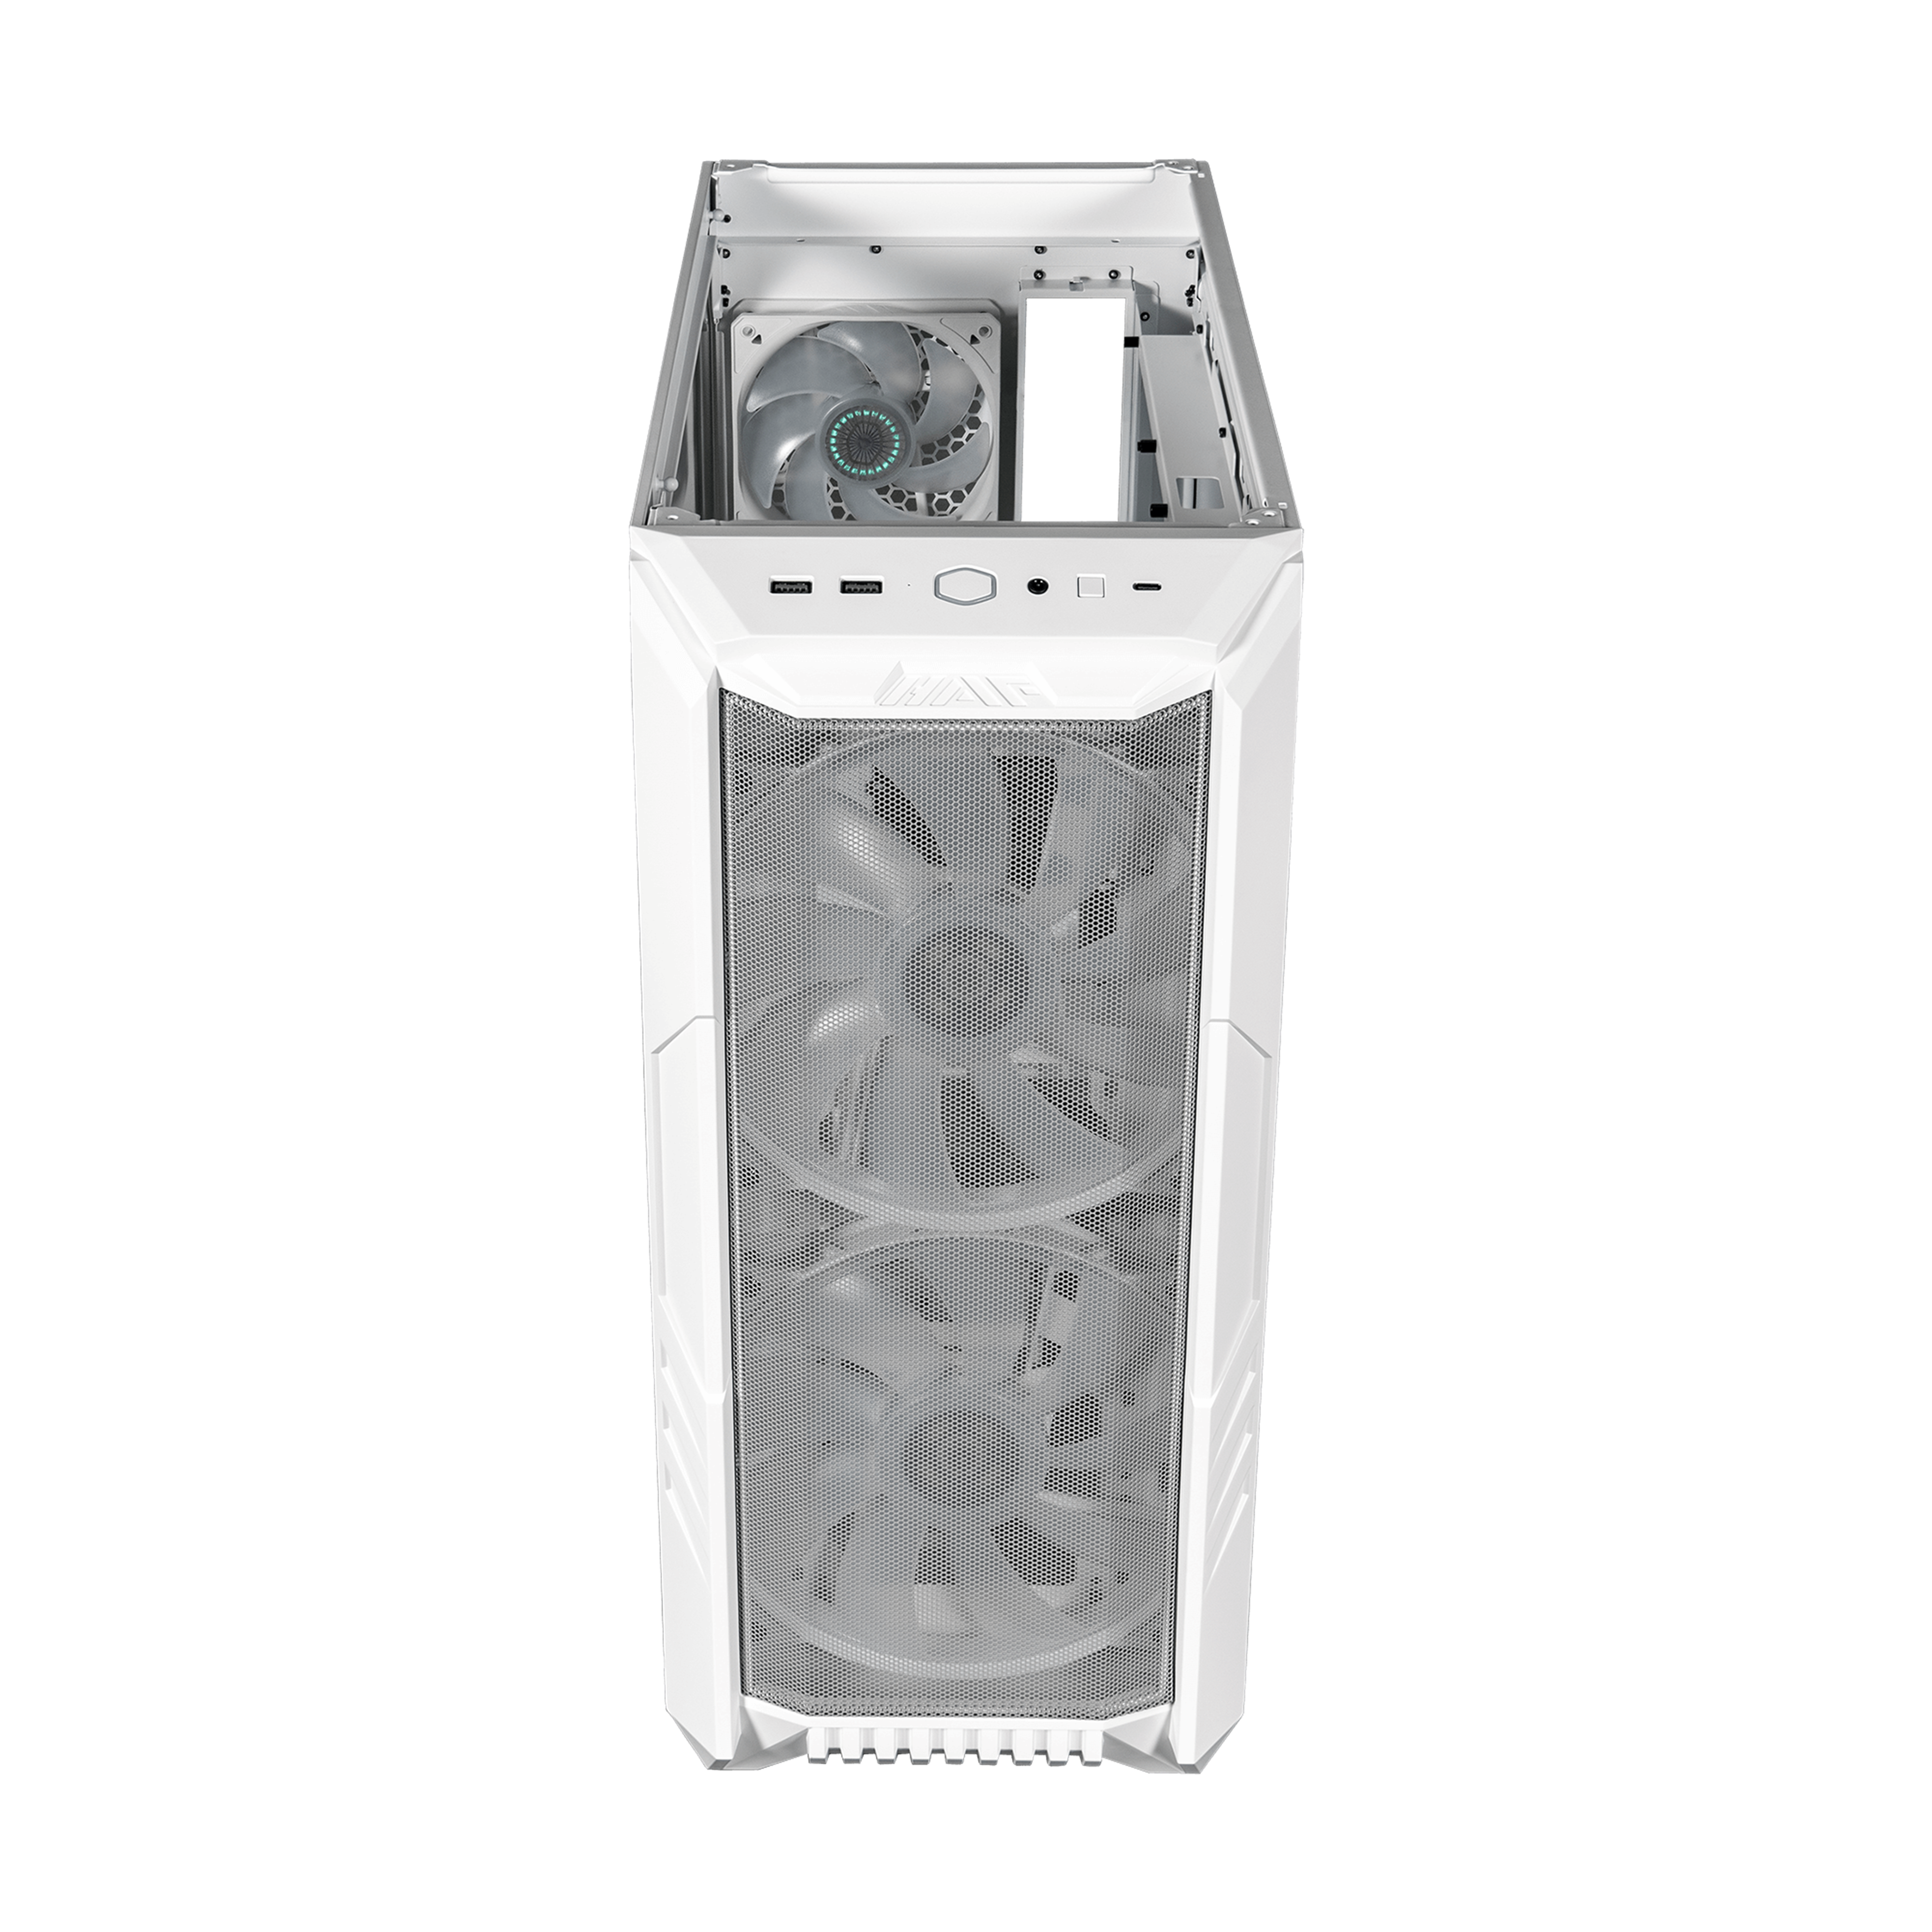 HAF 500 Mid Tower Case | Cooler Master